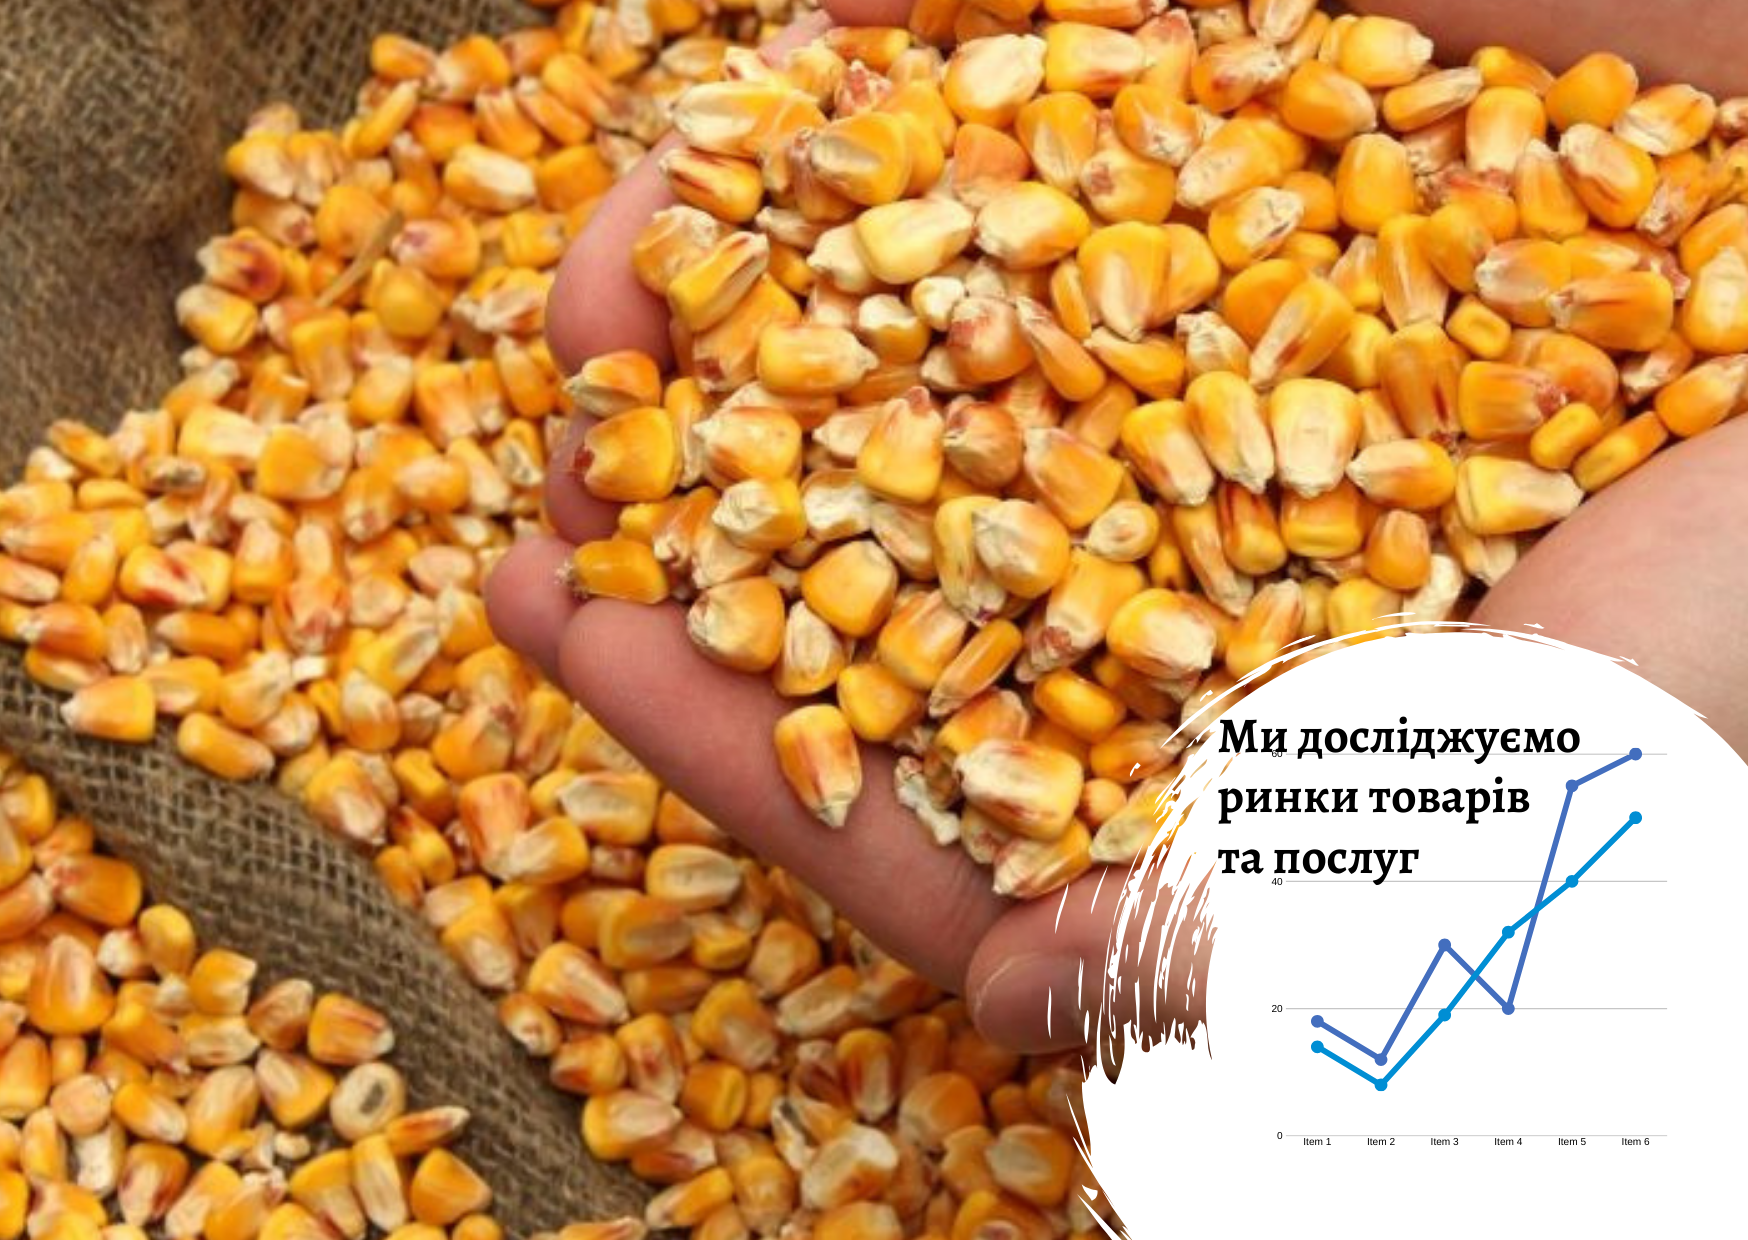 Рынок продуктов глубокой переработки кукурузы в Украине: перспективы развития